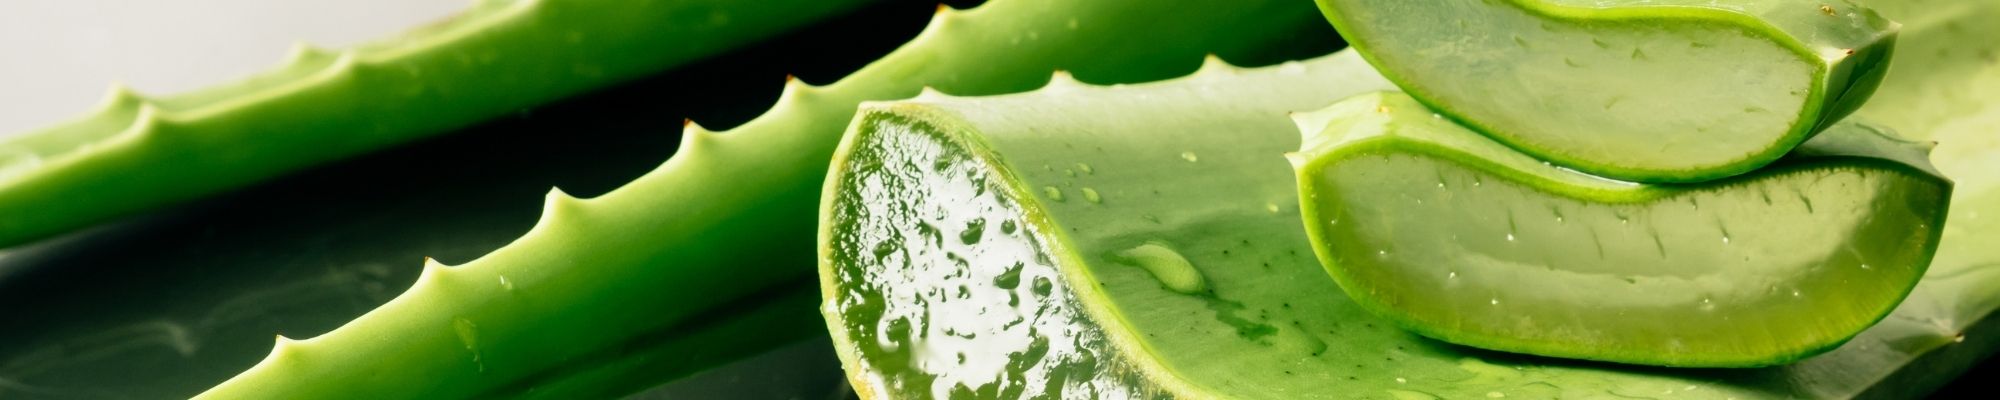 Herbalife Aloe vera drik bidrager til en normal fordøjelse